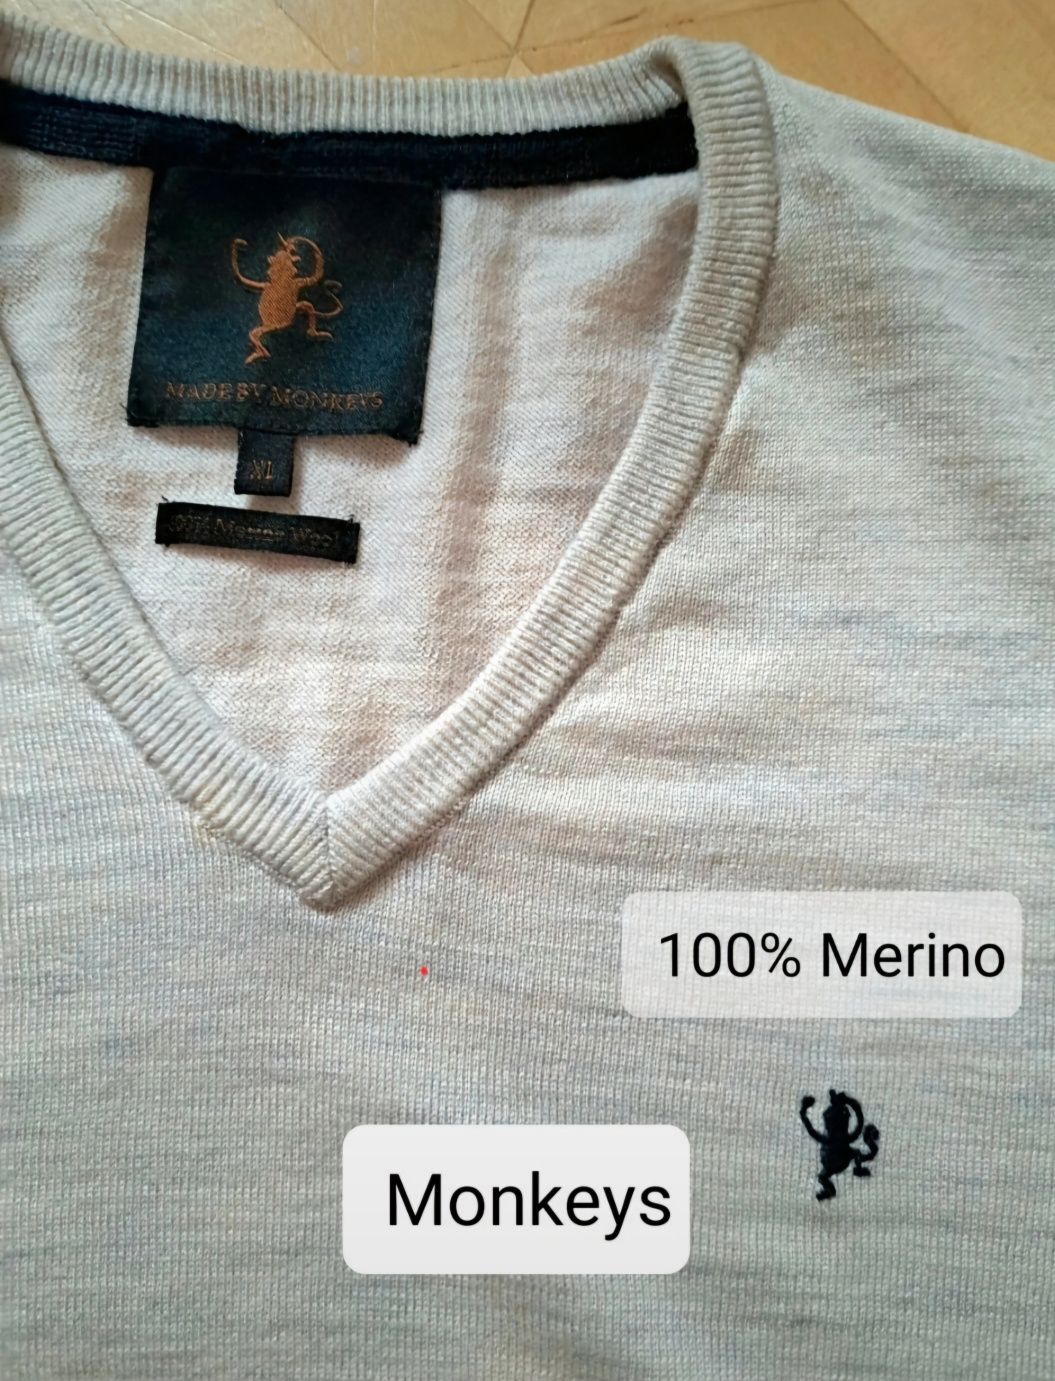 Męski sweterek w serek, wełna 100% merino, rozm. XL, Made by Monkeys